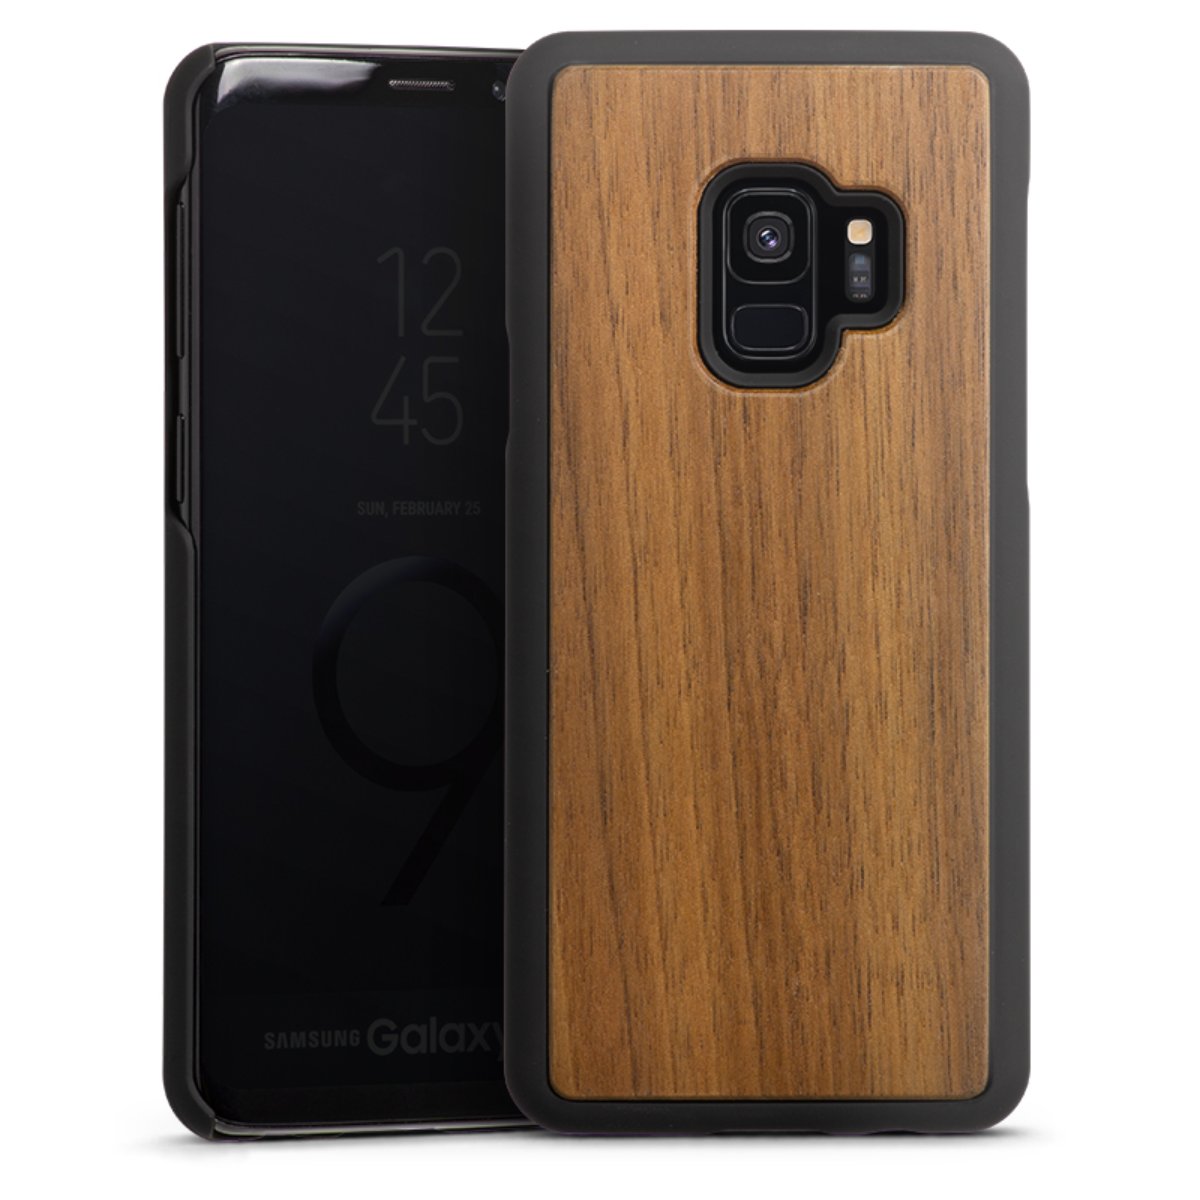 Wooden Hard Case für Samsung Galaxy S9 Duos